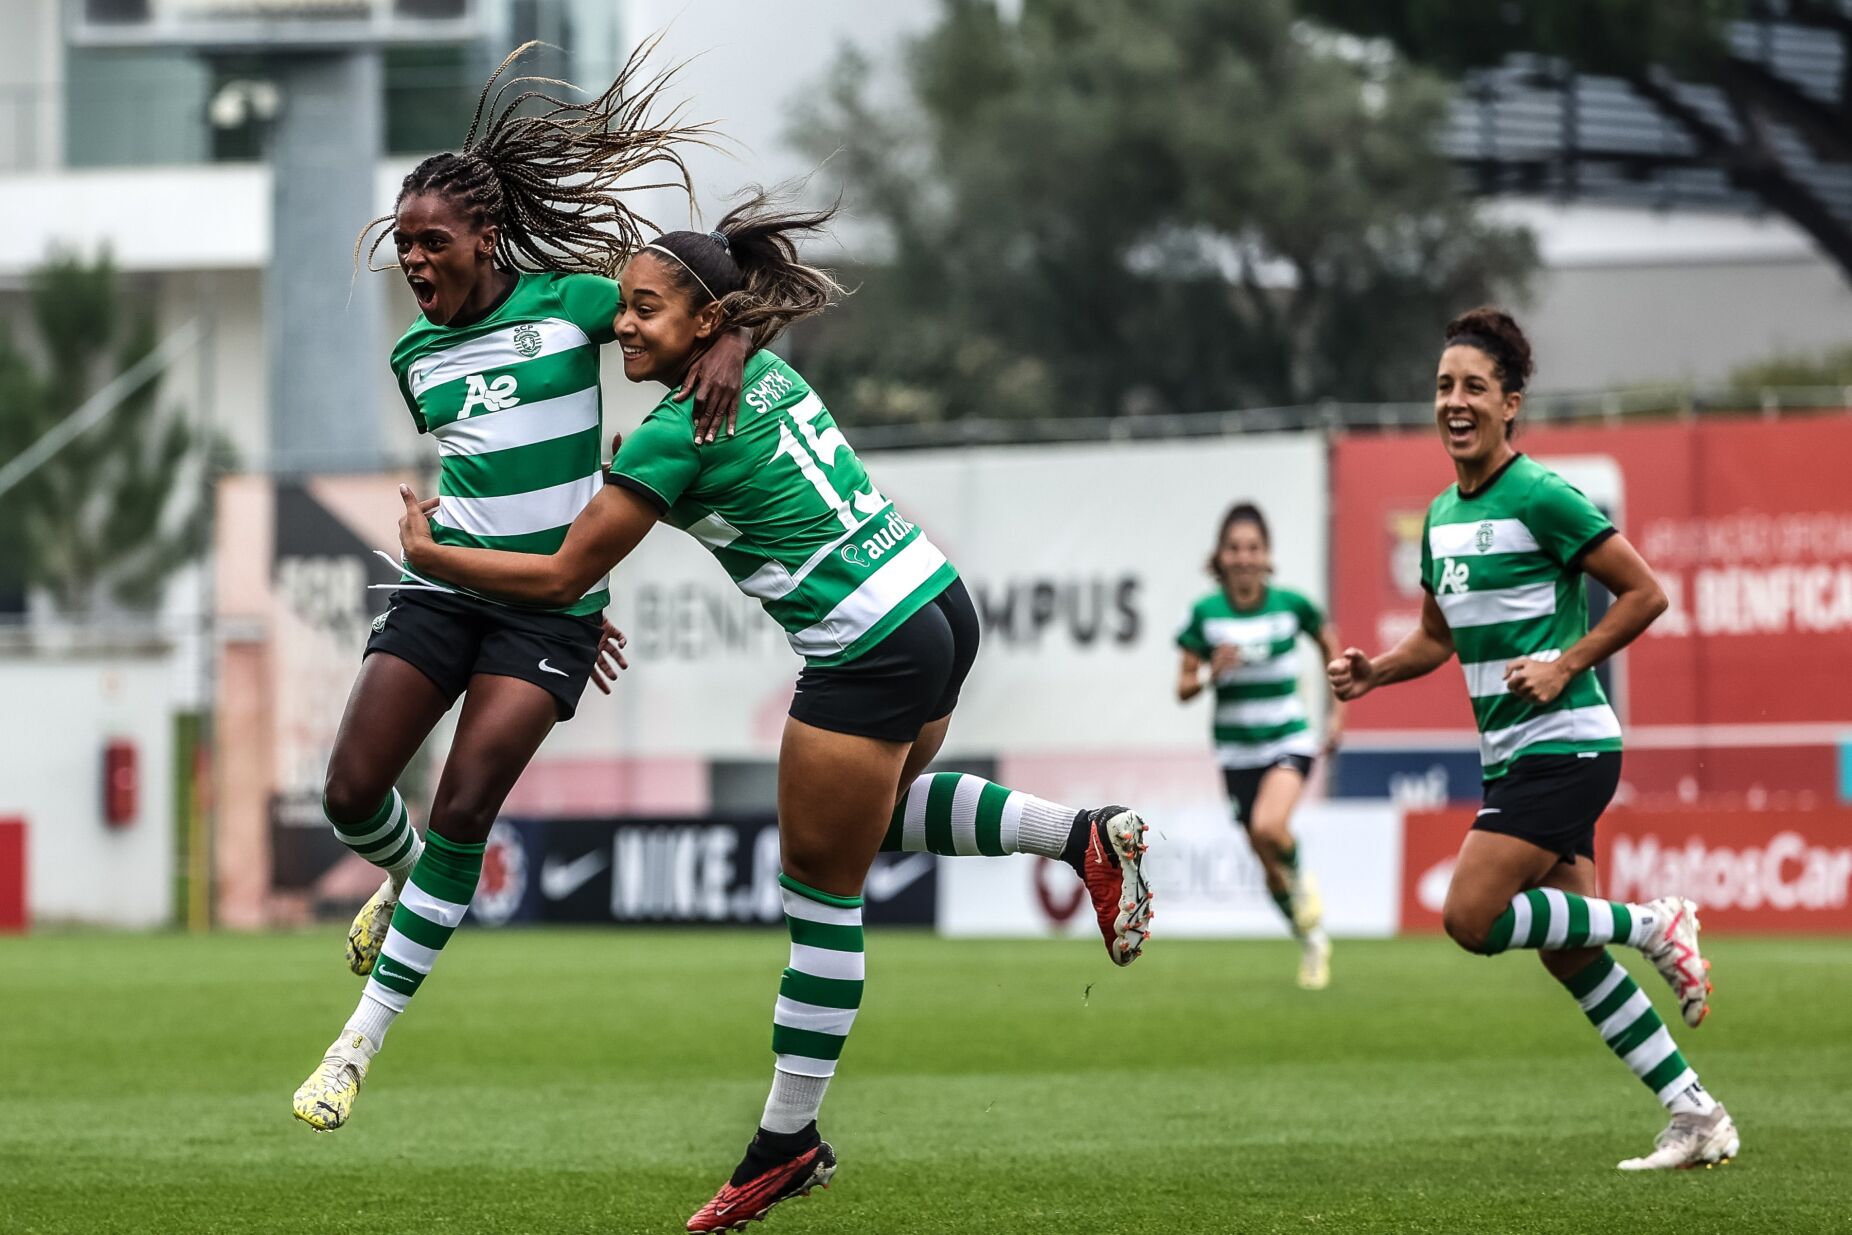 Duas Mulheres em Jogo - Futebol e Liderança– LÍDER